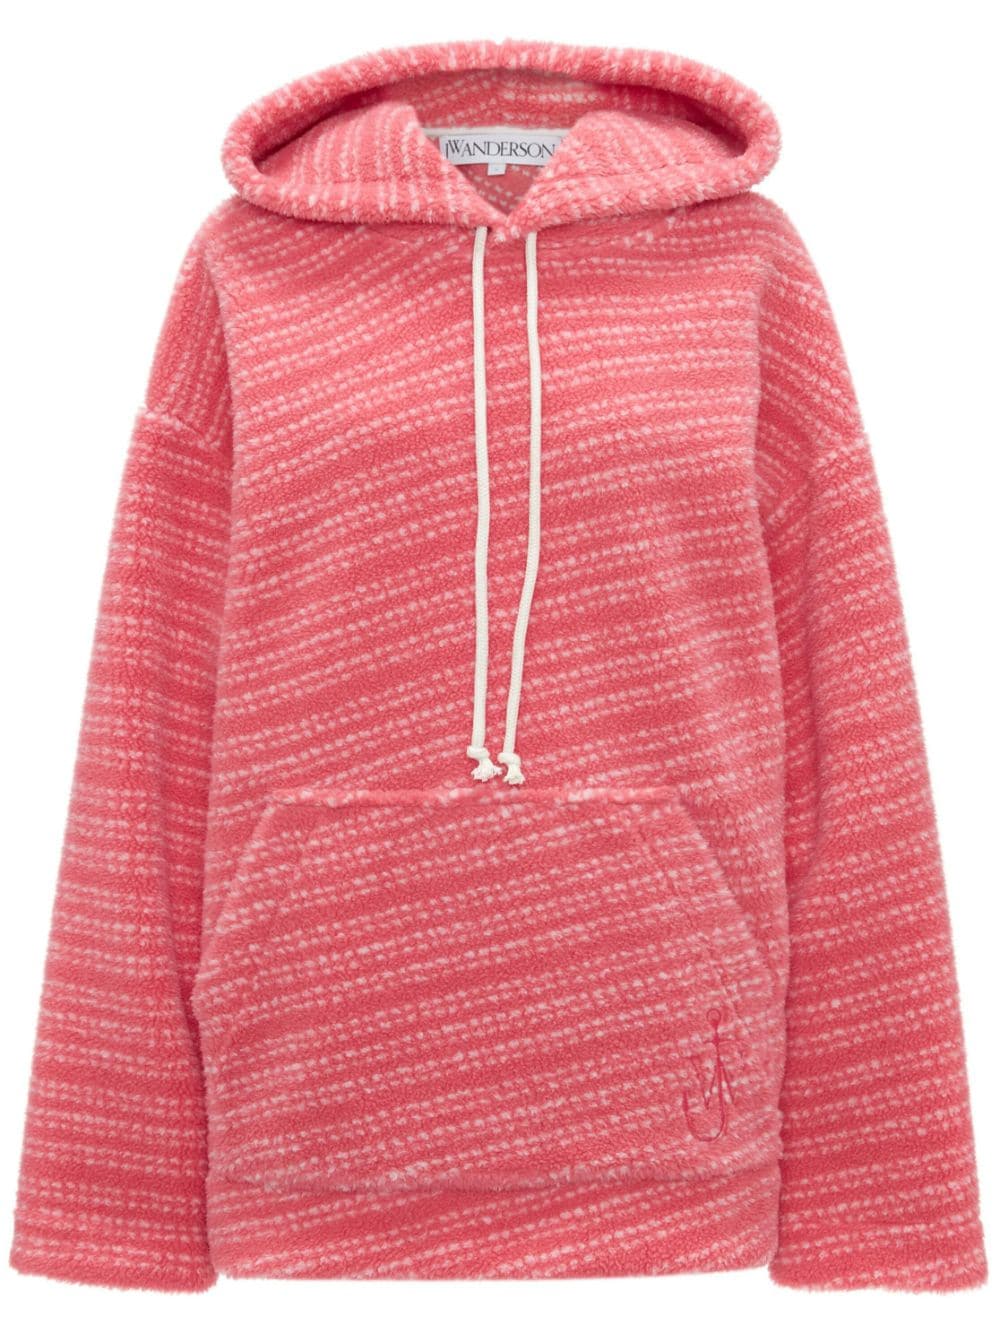 JW Anderson embroidered-logo striped hoodie - Pink von JW Anderson